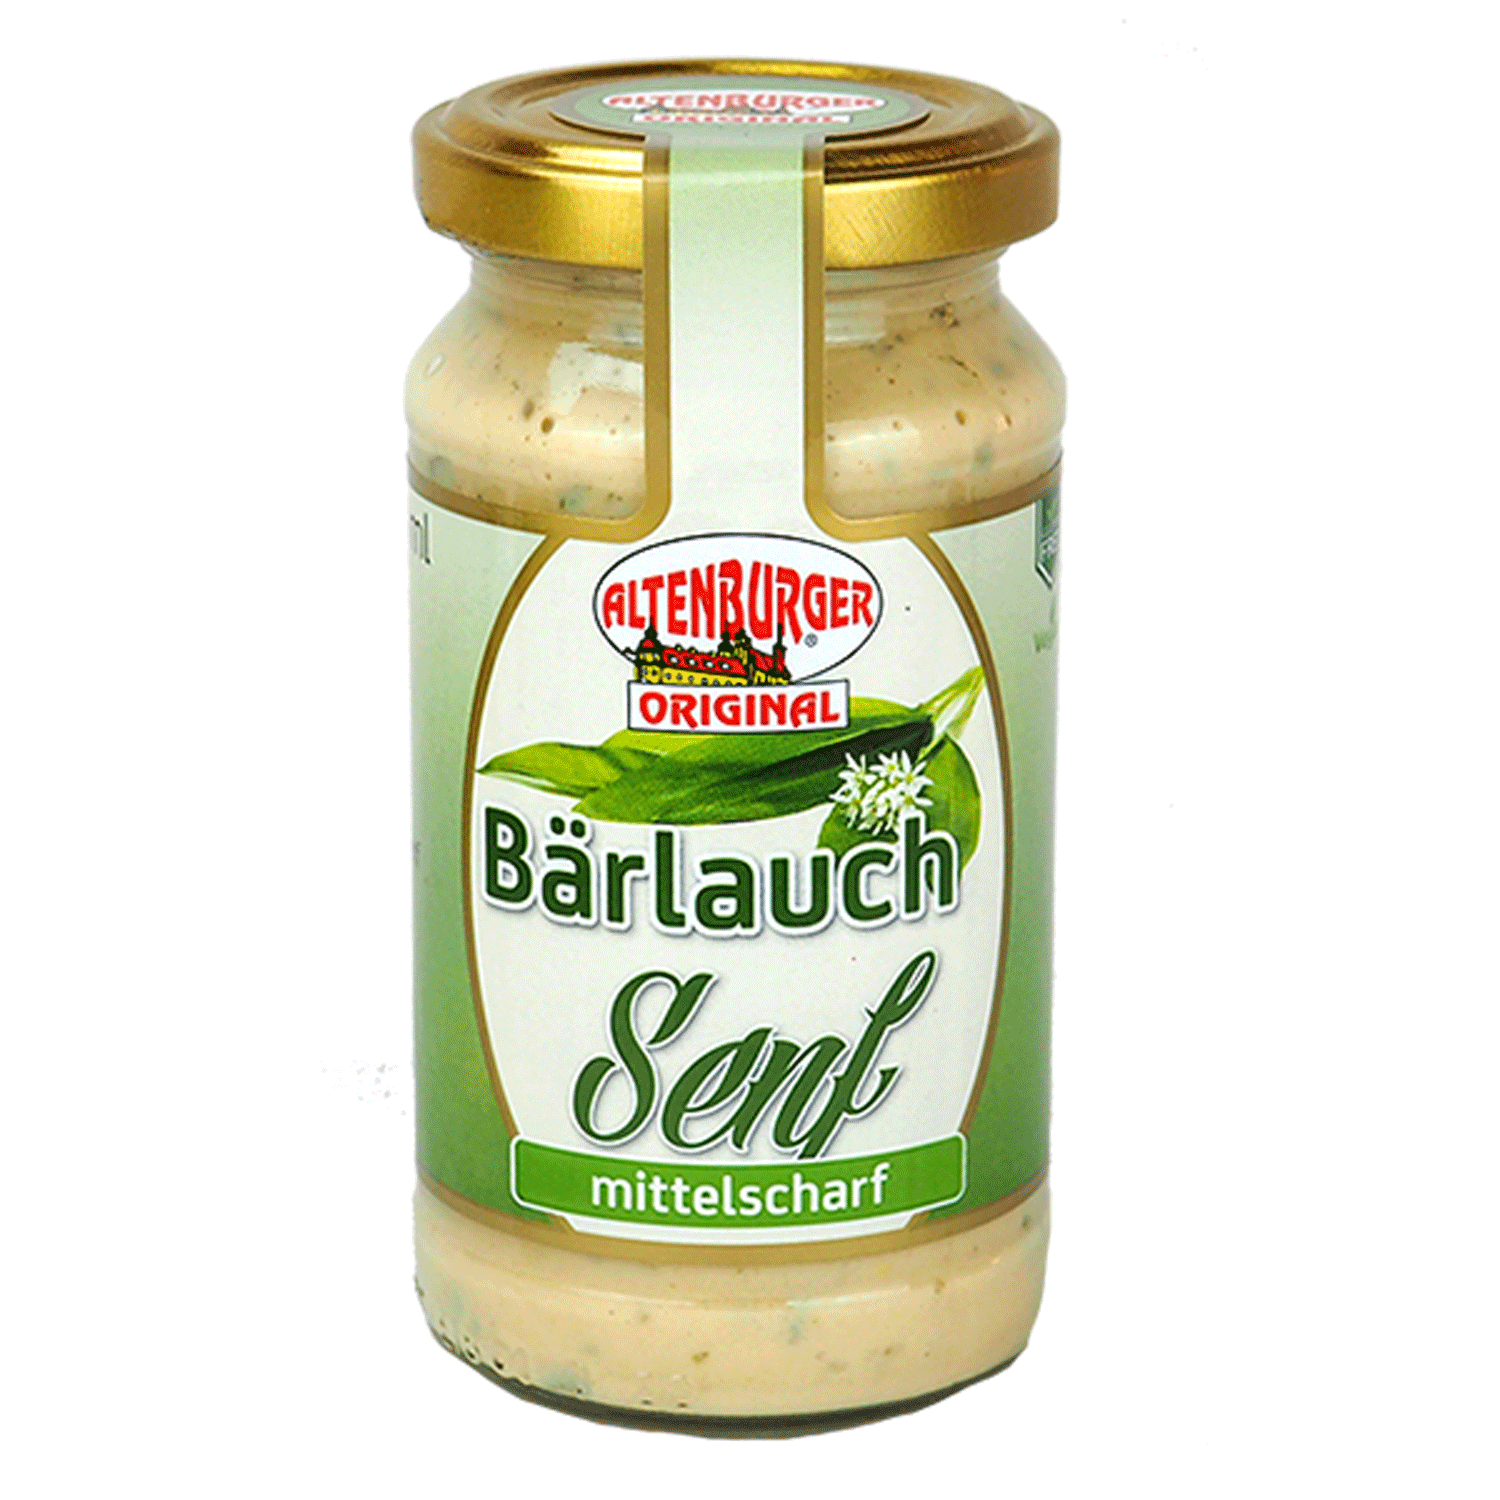 Bärlauch Senf